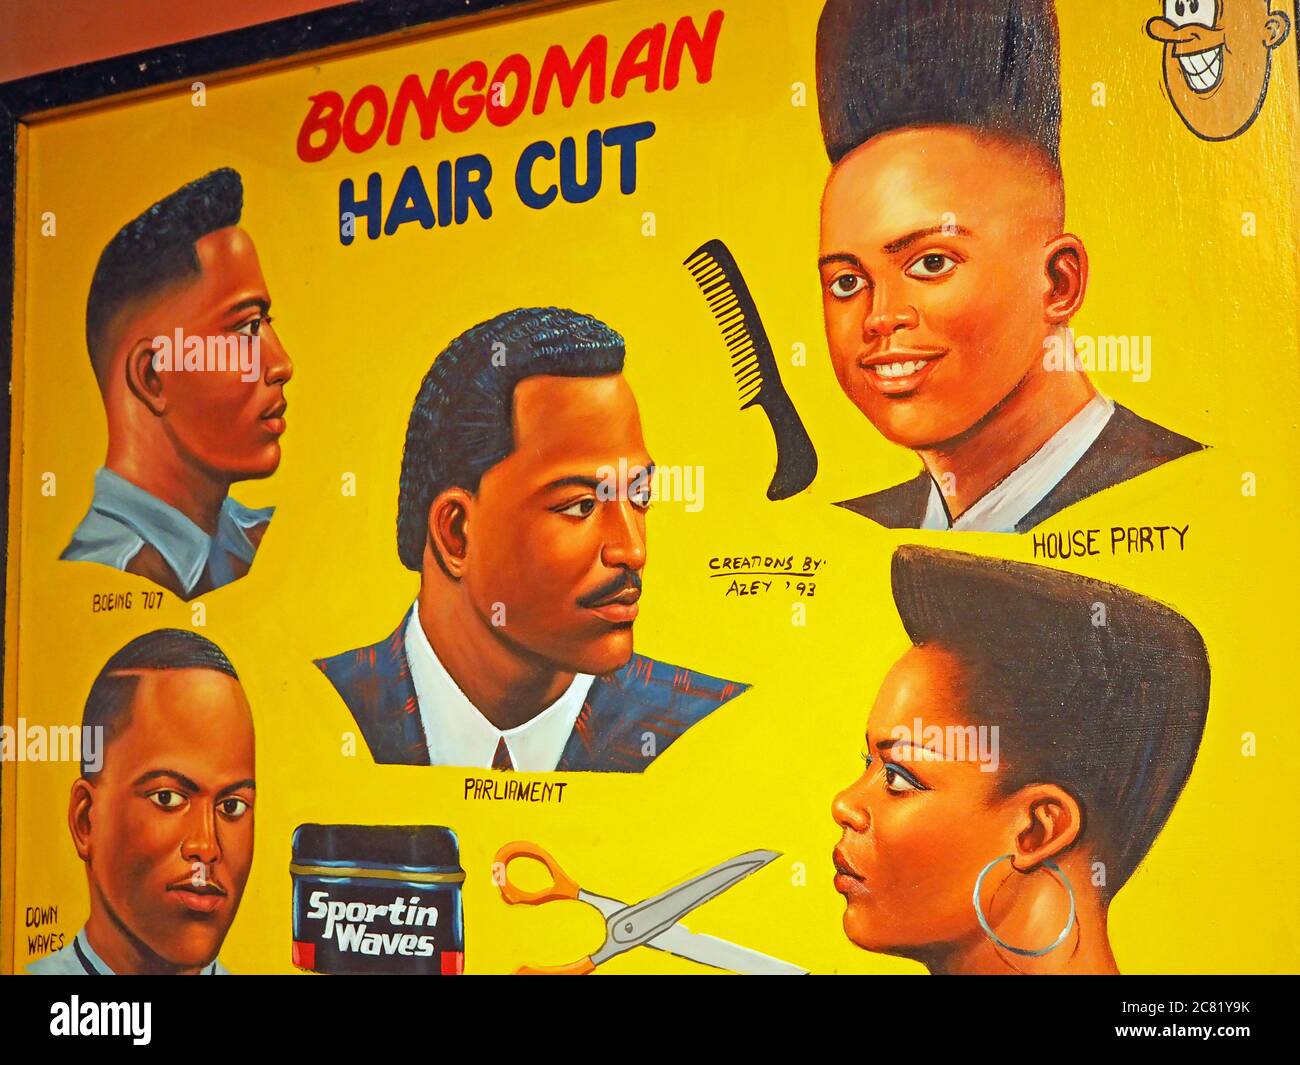 Bongoman Hair Cut, African barber sign, Calgary, Alberta, Canada Stock Photo